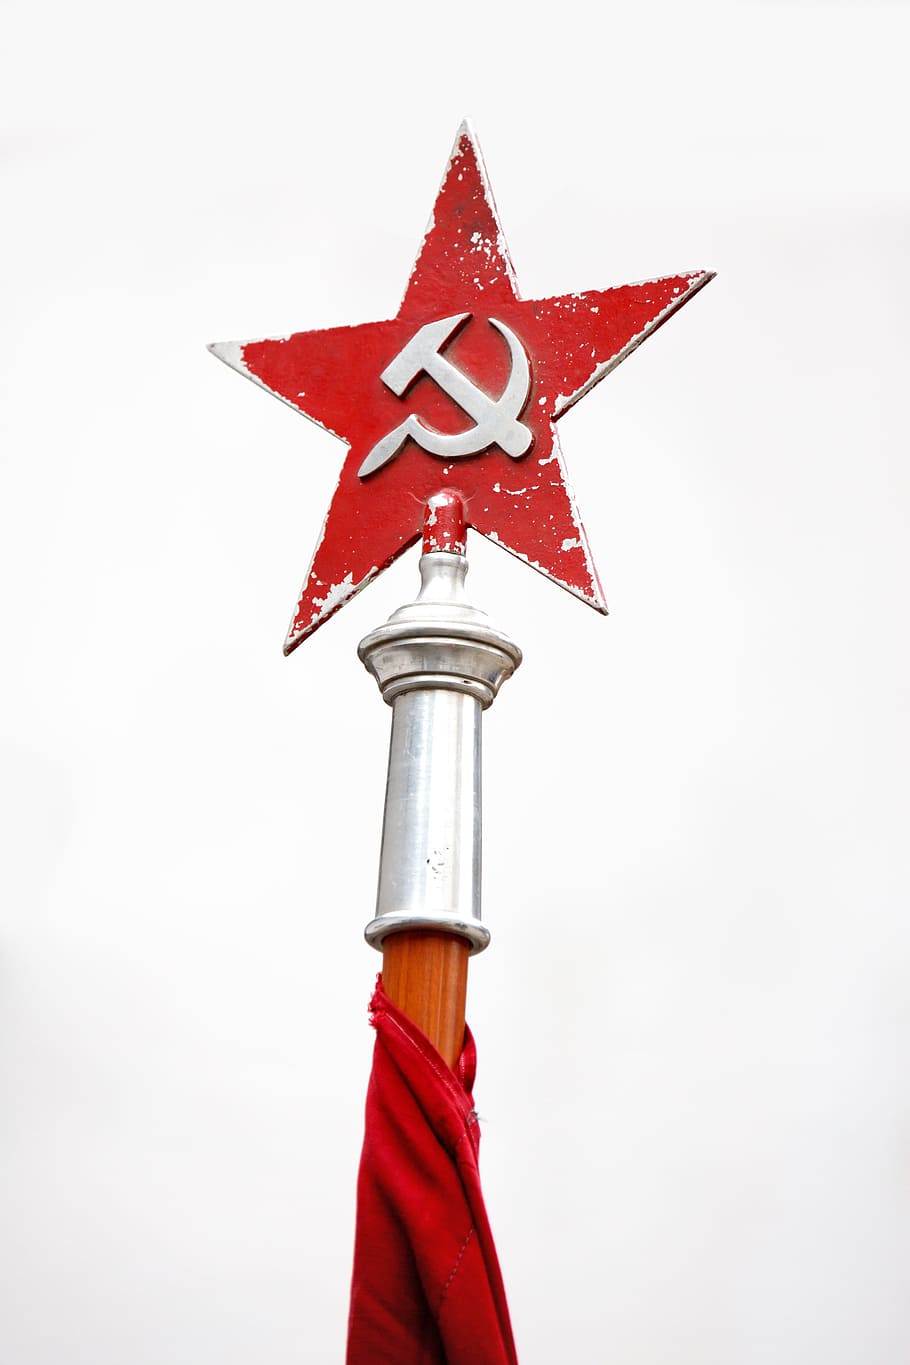 rojo, estrella, hoz, poste de martillo, comunismo, comunista, martillo, Moscú, antiguo, política